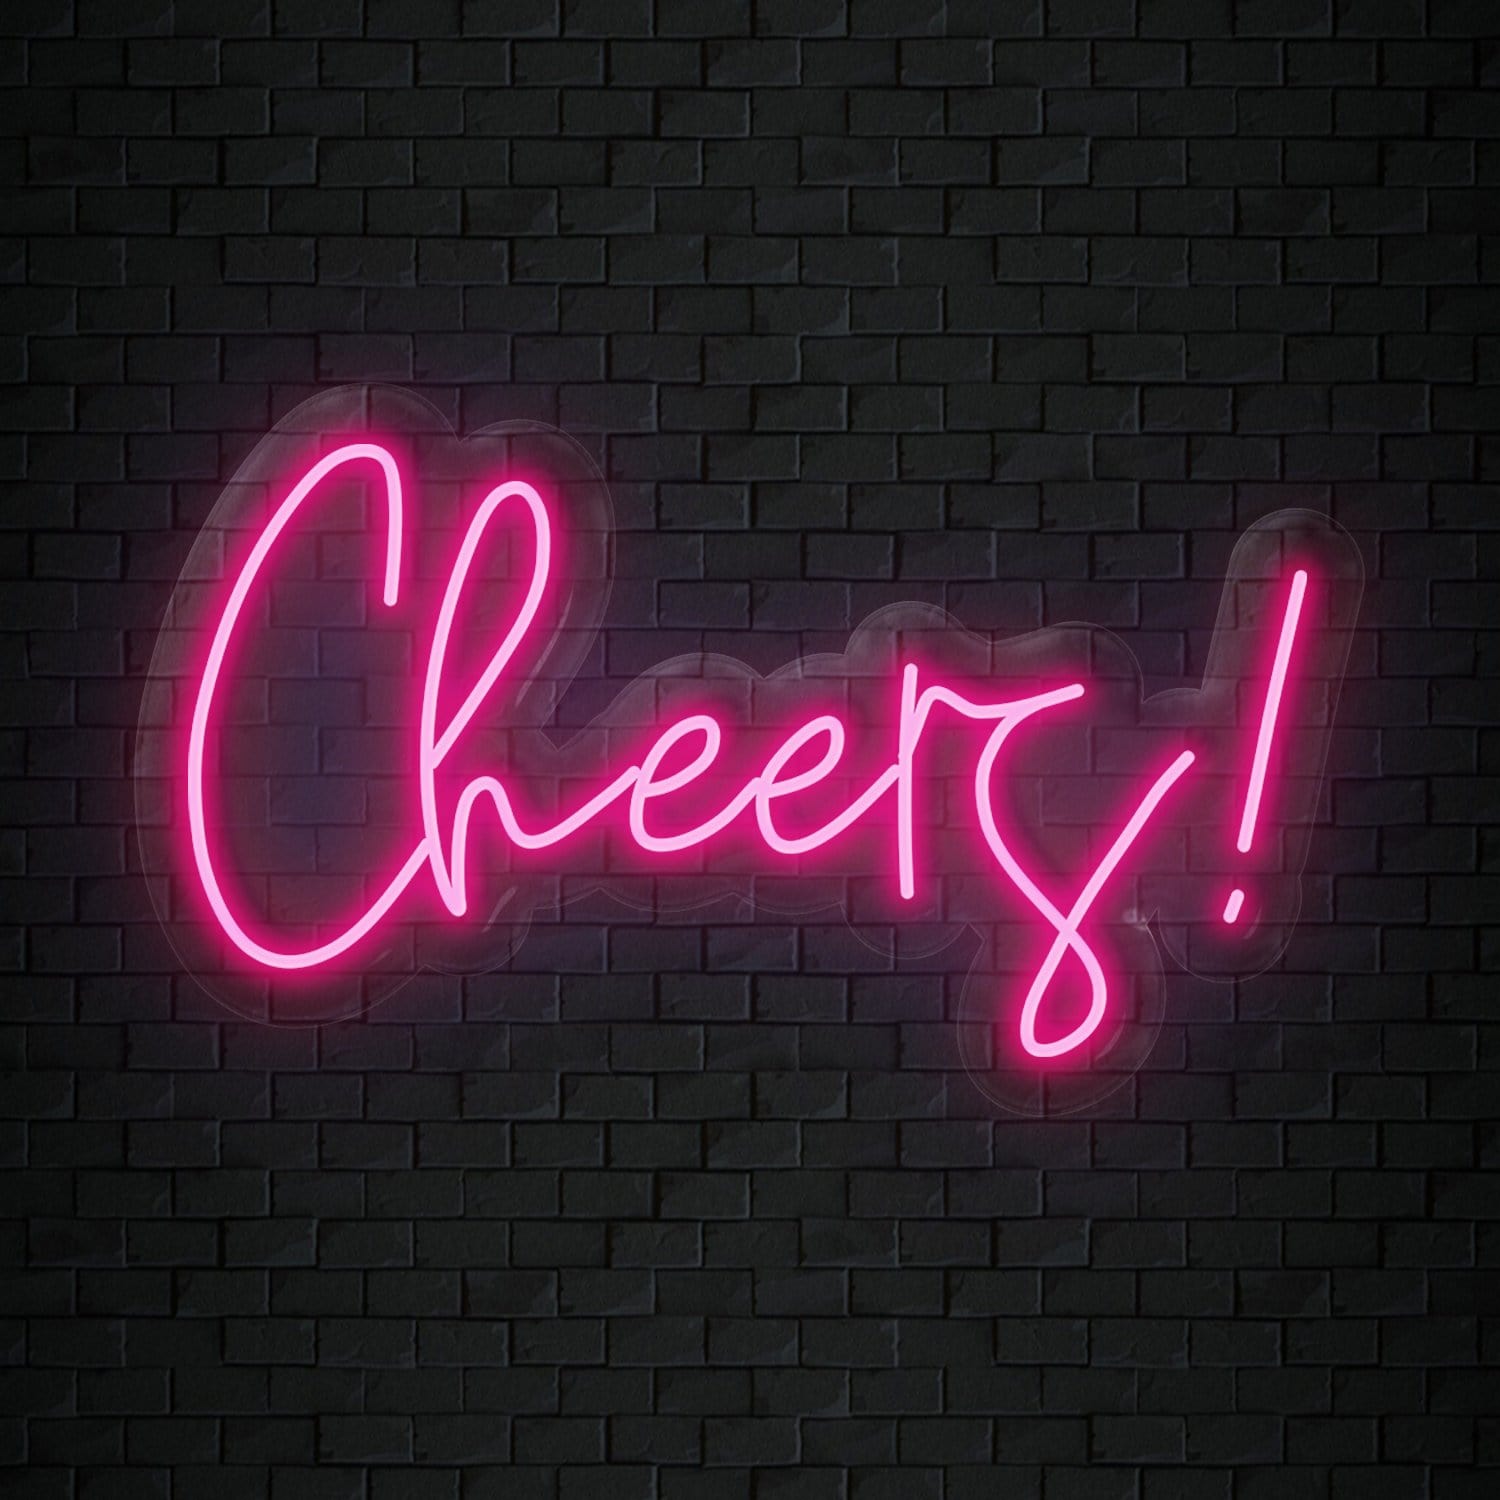 "Cheers" LED Neon Sign Schriftzug - NEONEVERGLOW